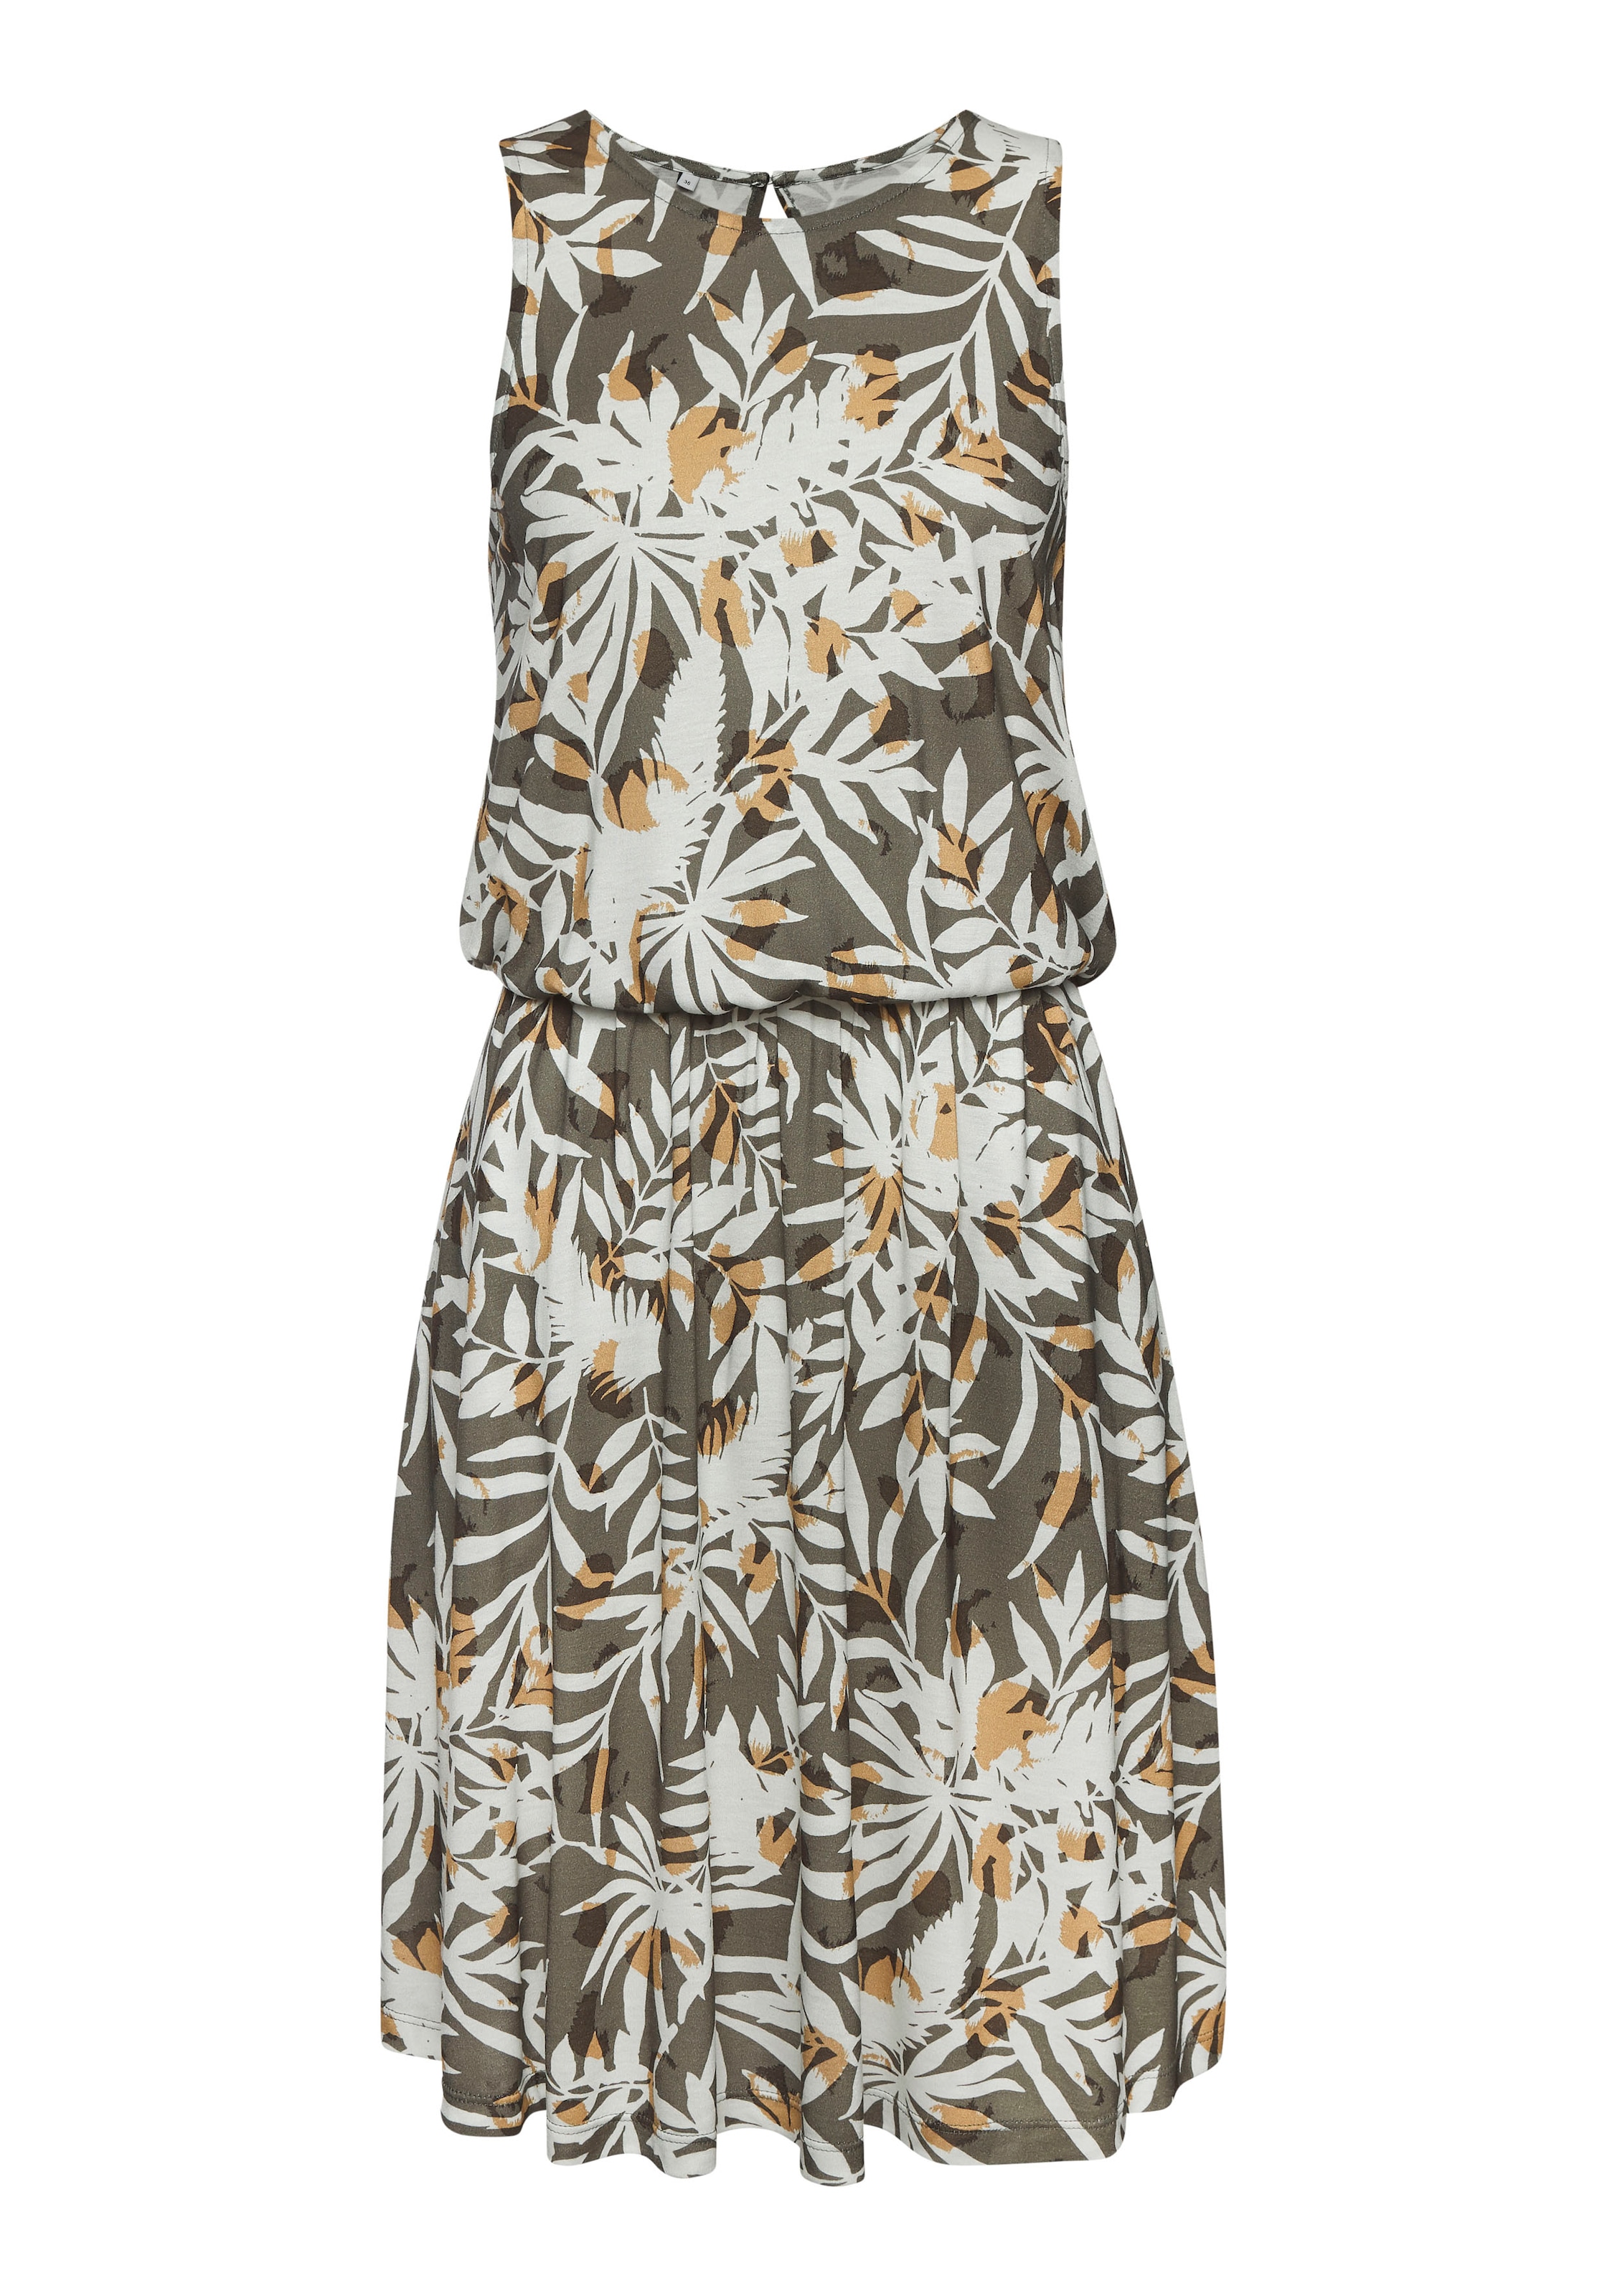 Vivance Jerseykleid, mit Blätterdruck, kurzes Sommerkleid, Strandkleid